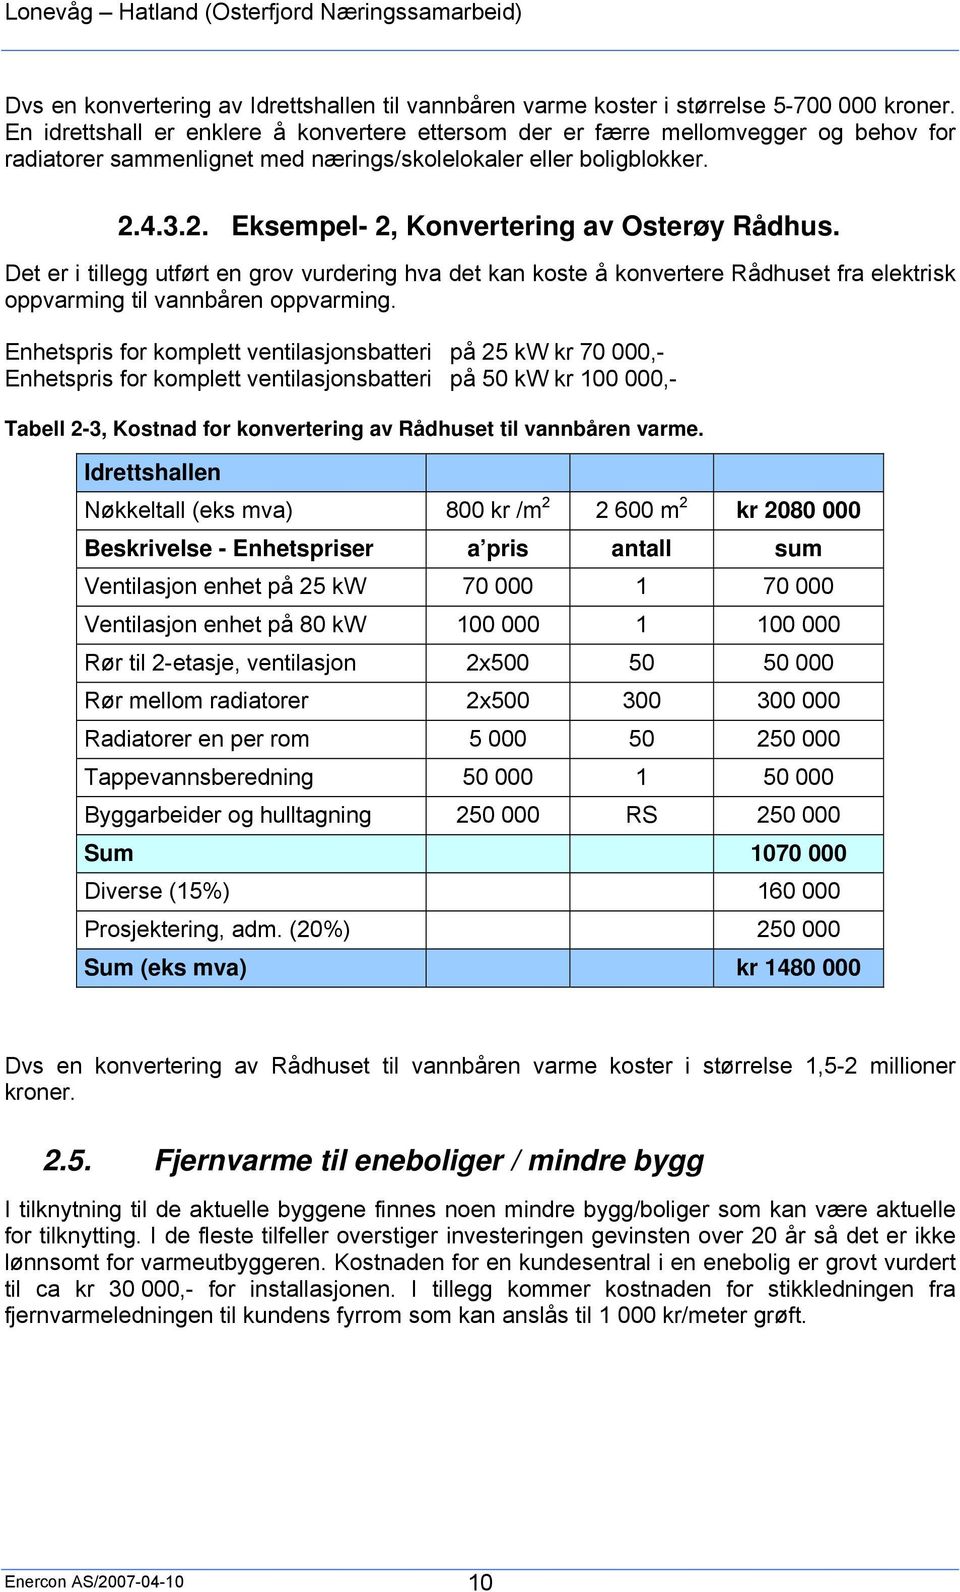 4.3.2. Eksempel- 2, Konvertering av Osterøy Rådhus. Det er i tillegg utført en grov vurdering hva det kan koste å konvertere Rådhuset fra elektrisk oppvarming til vannbåren oppvarming.